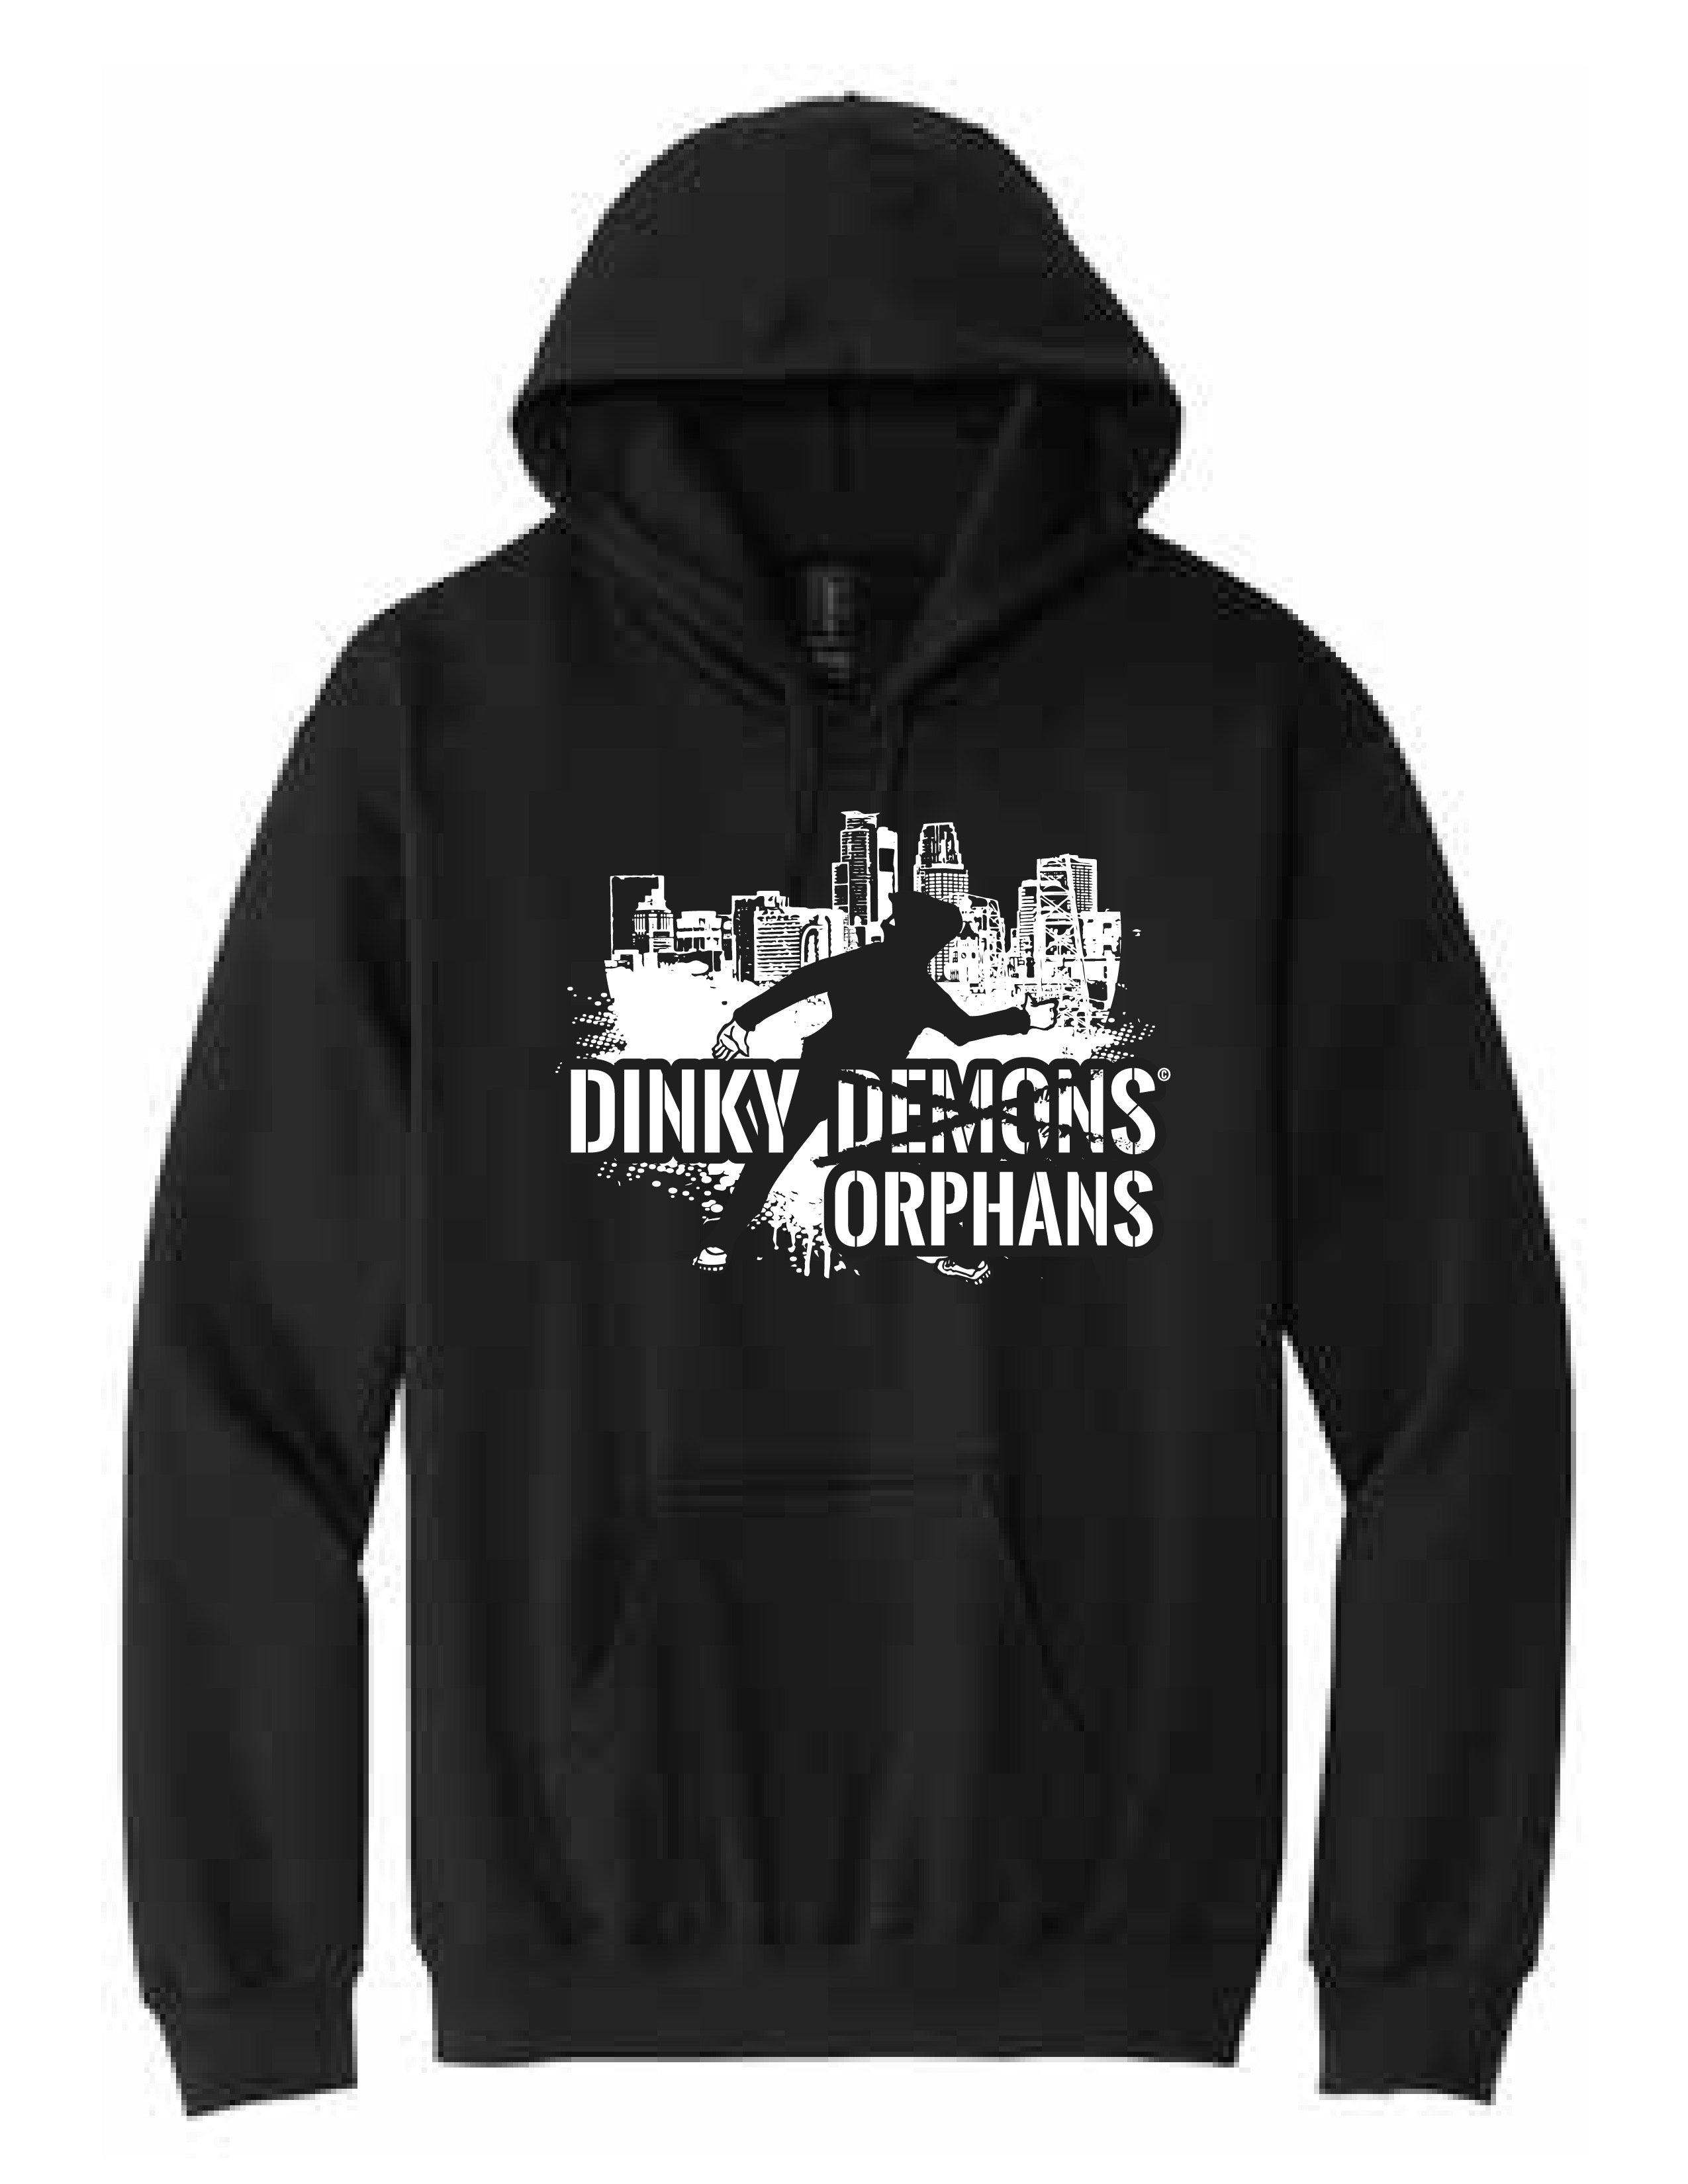 Dinky Demons Hoodie